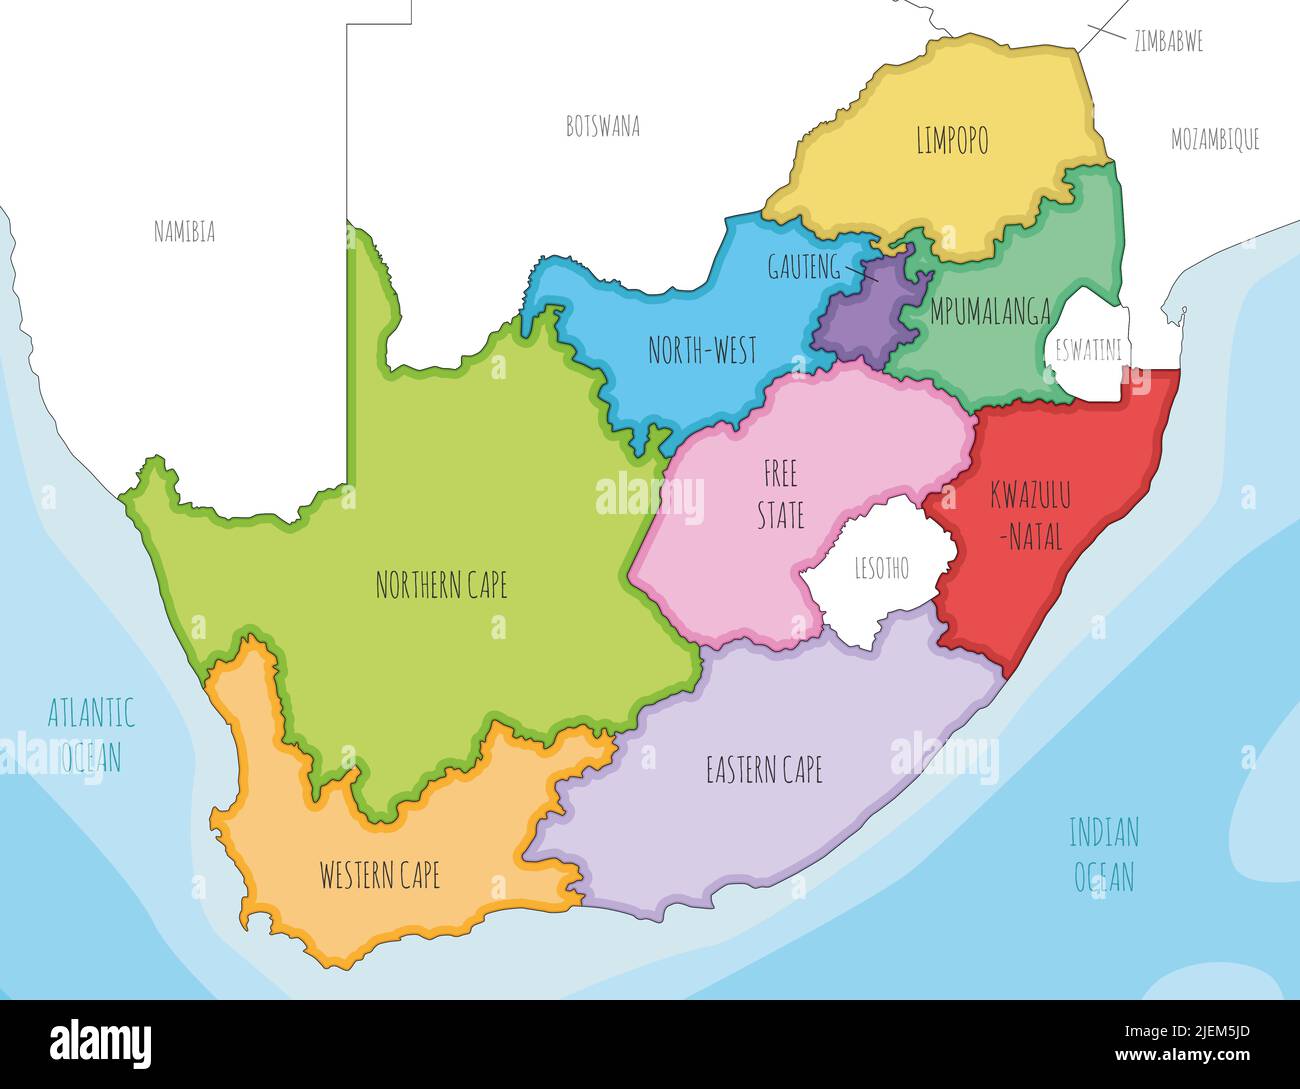 Mappa illustrata vettoriale del Sud Africa con province e divisioni amministrative, e paesi vicini. Livelli modificabili e chiaramente etichettati. Illustrazione Vettoriale